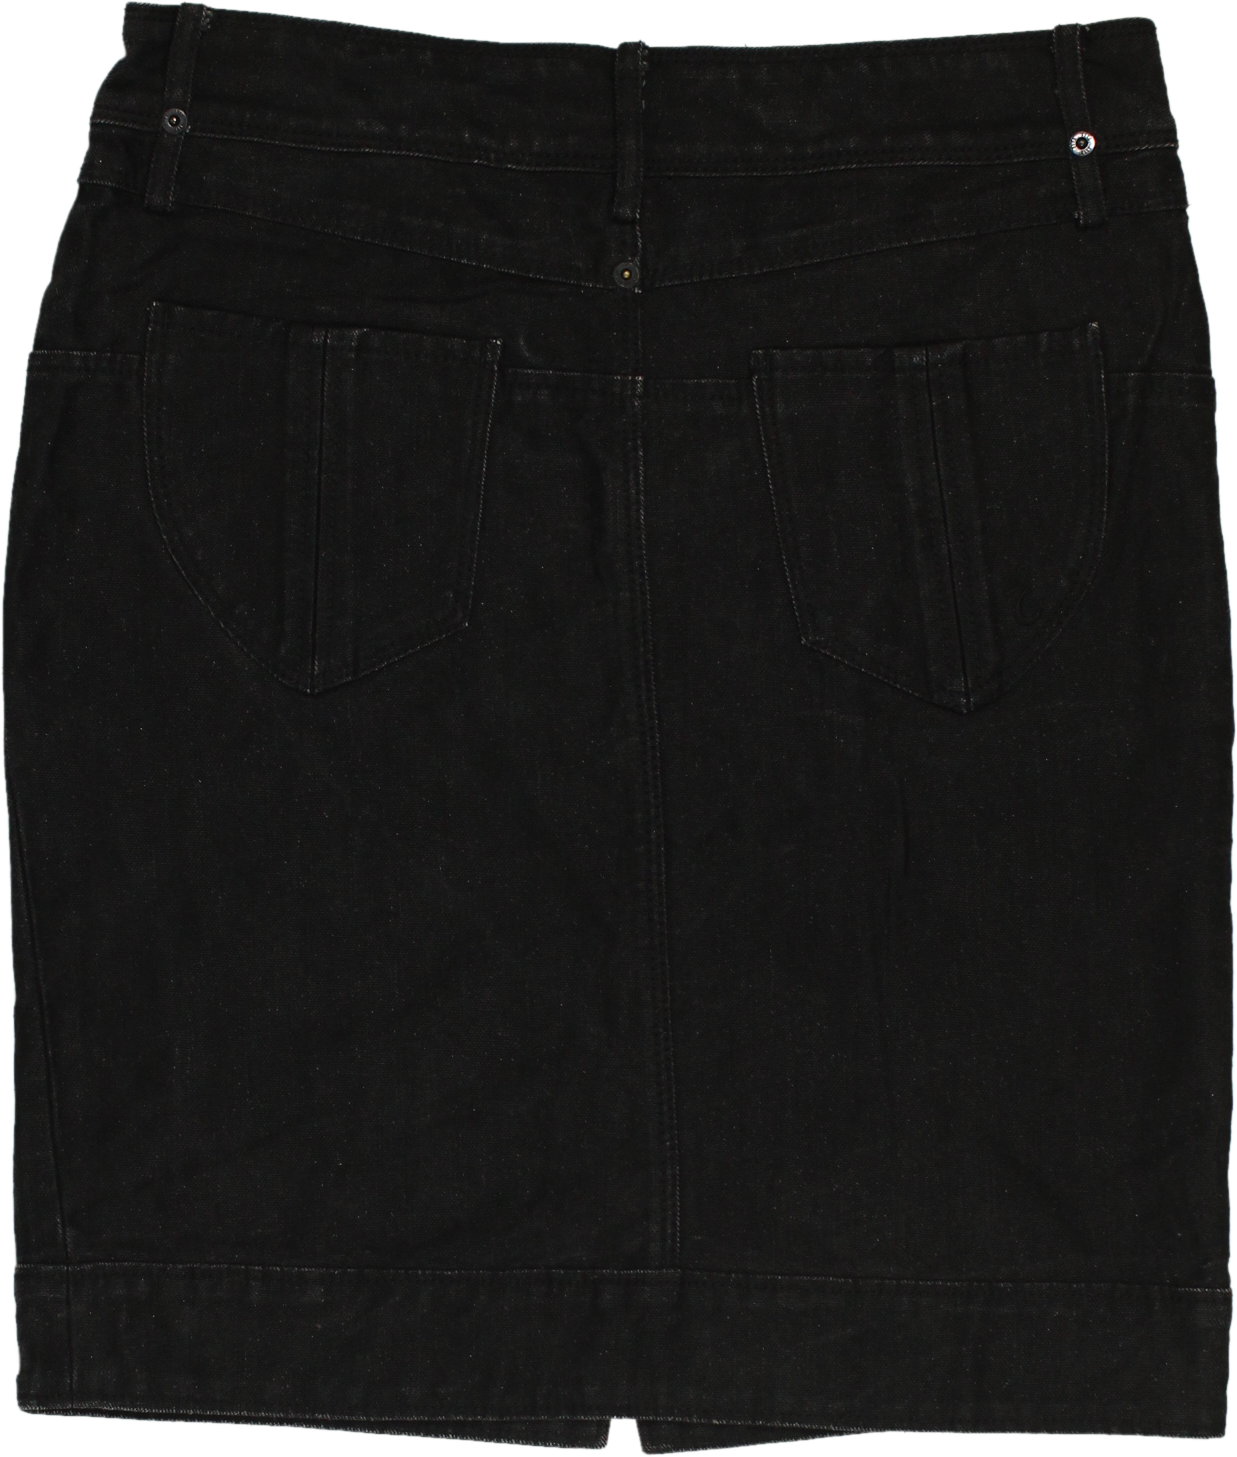 Elle - Denim Skirt- ThriftTale.com - Vintage and second handclothing